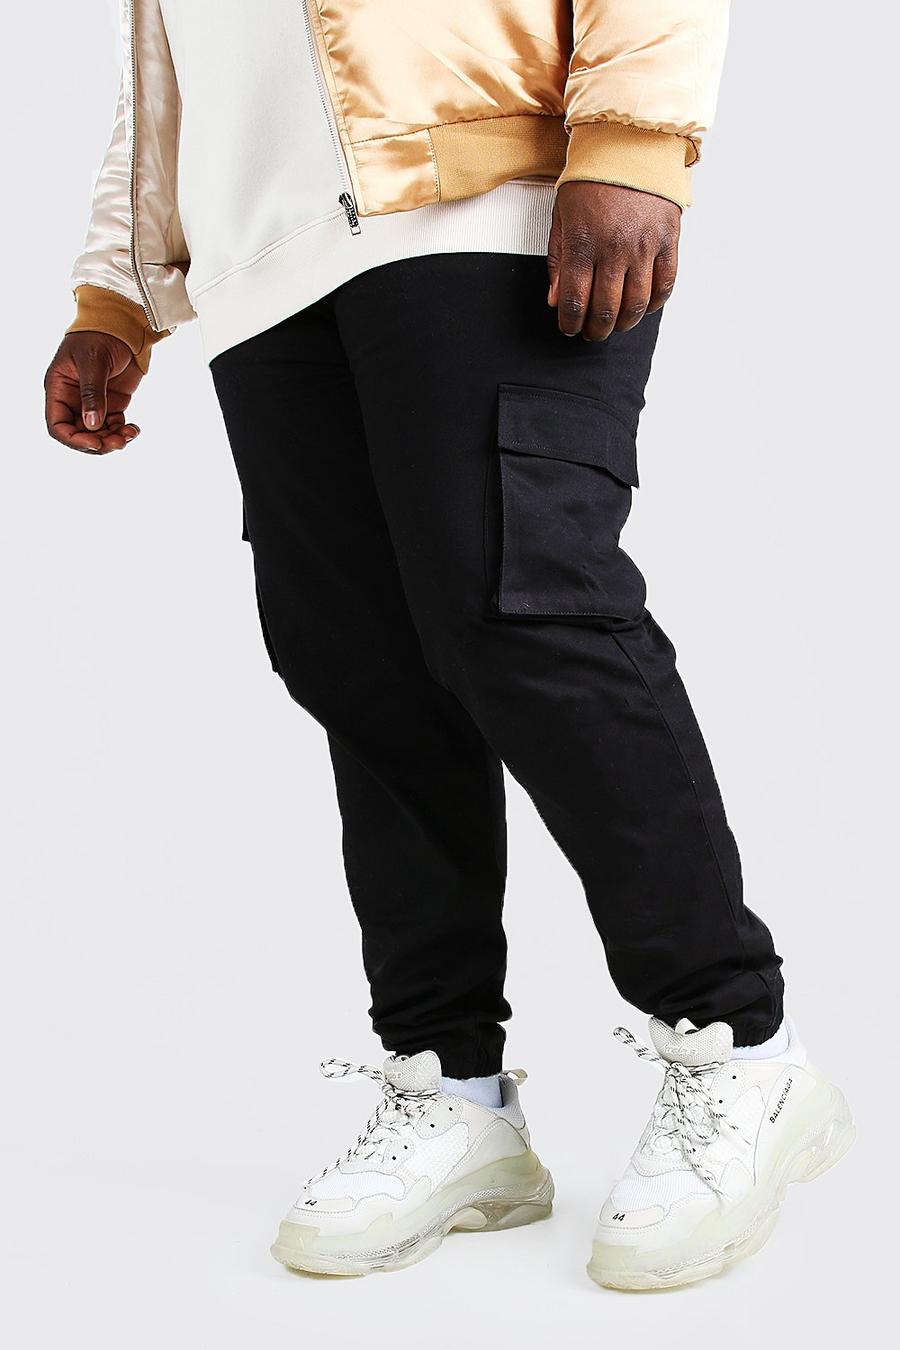 Plus Size pantaloni tuta cargo con tasca utility, Nero negro